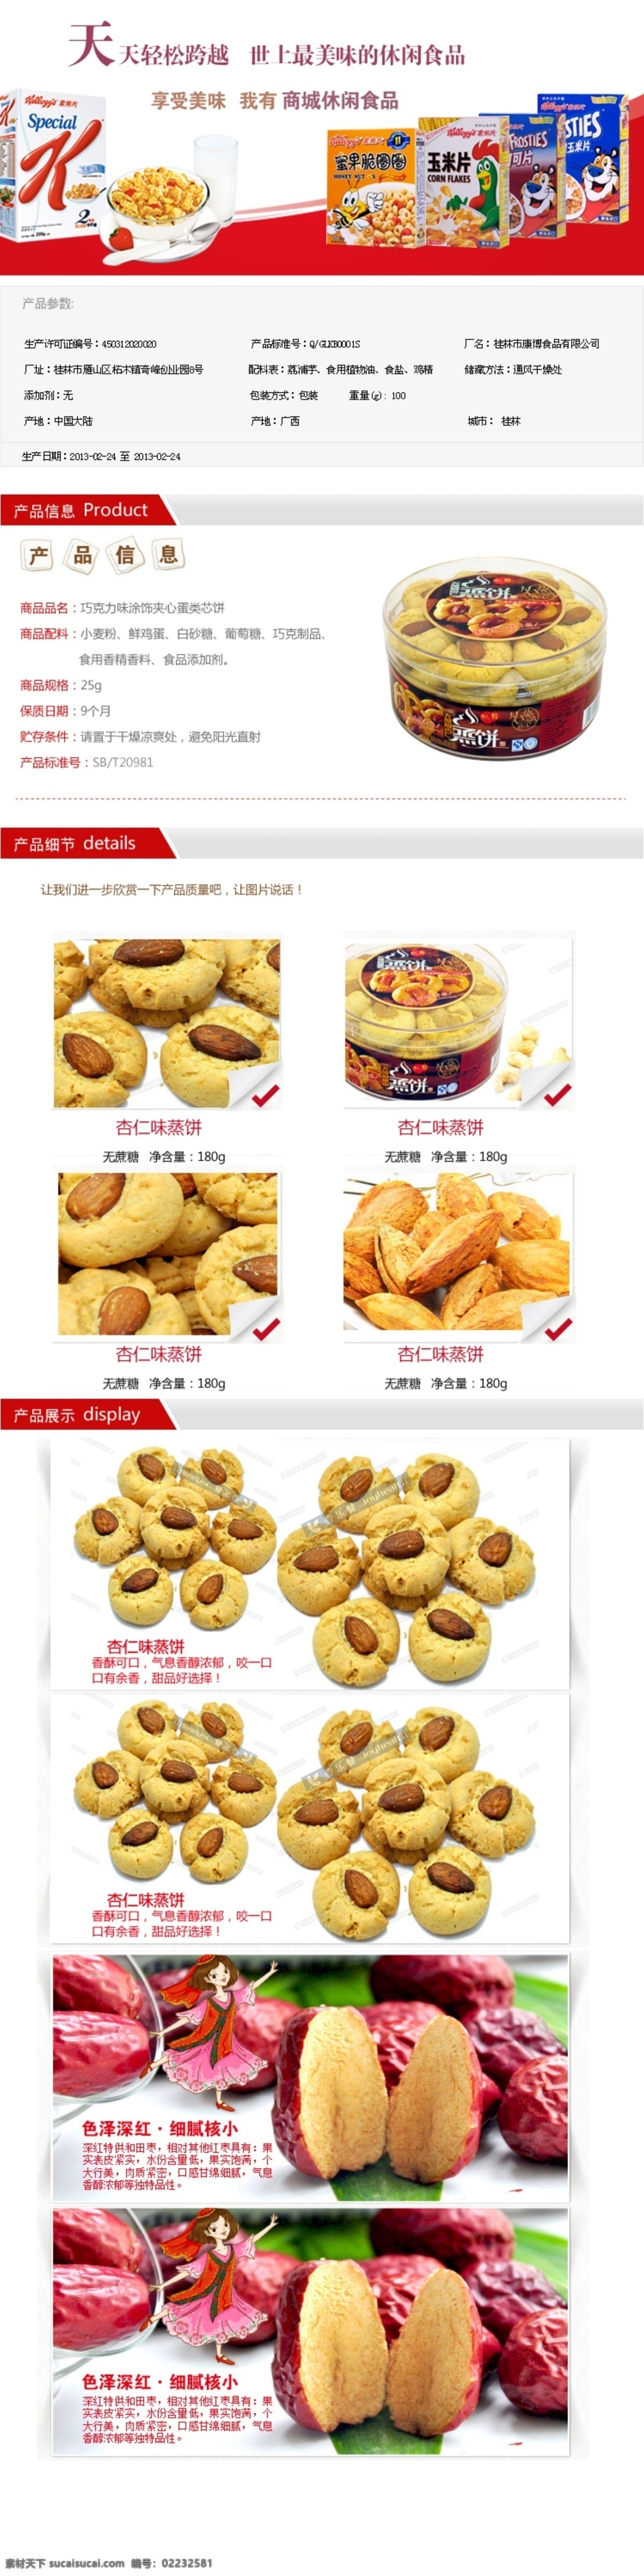 模版 商城 淘宝 网页 网页模板 休闲食品 源文件 中文模板 模板下载 网页素材